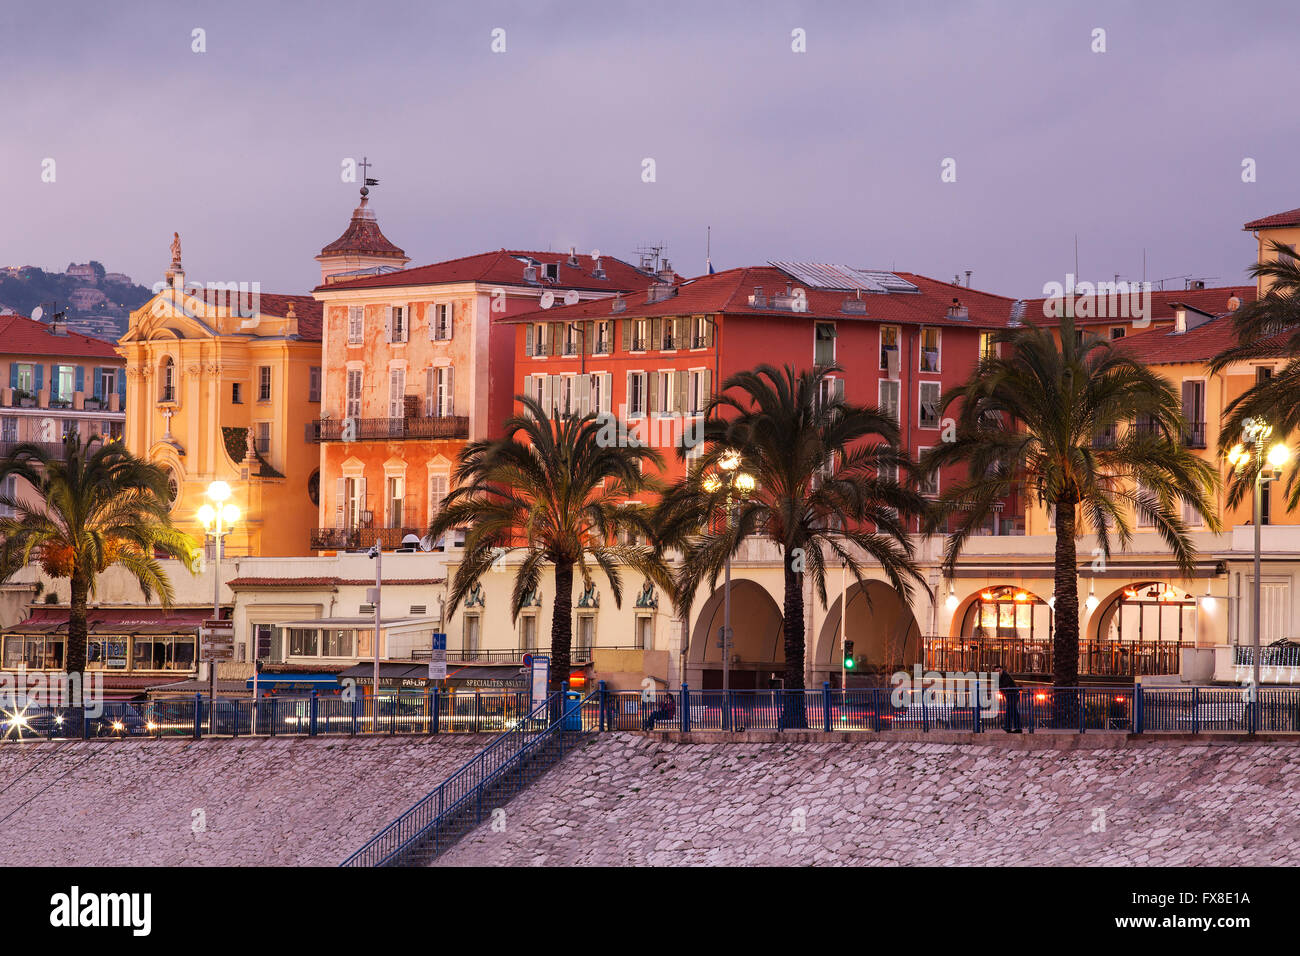 Nizza Promenade des Anglais in serata - Cote d'Azur, Provenza, Francia Foto Stock